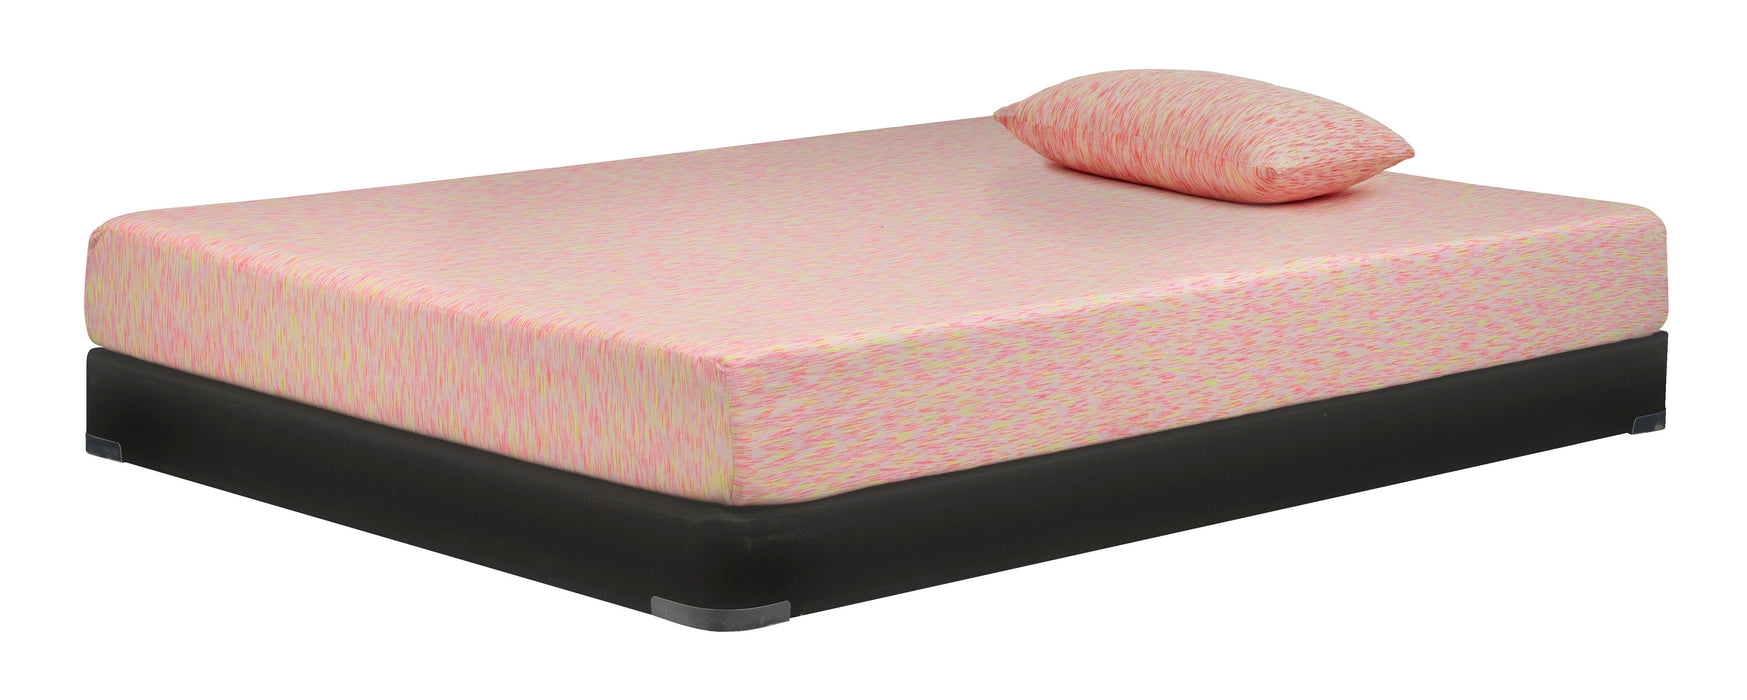 iKidz Pink Pink Twin Mattress and Pillow